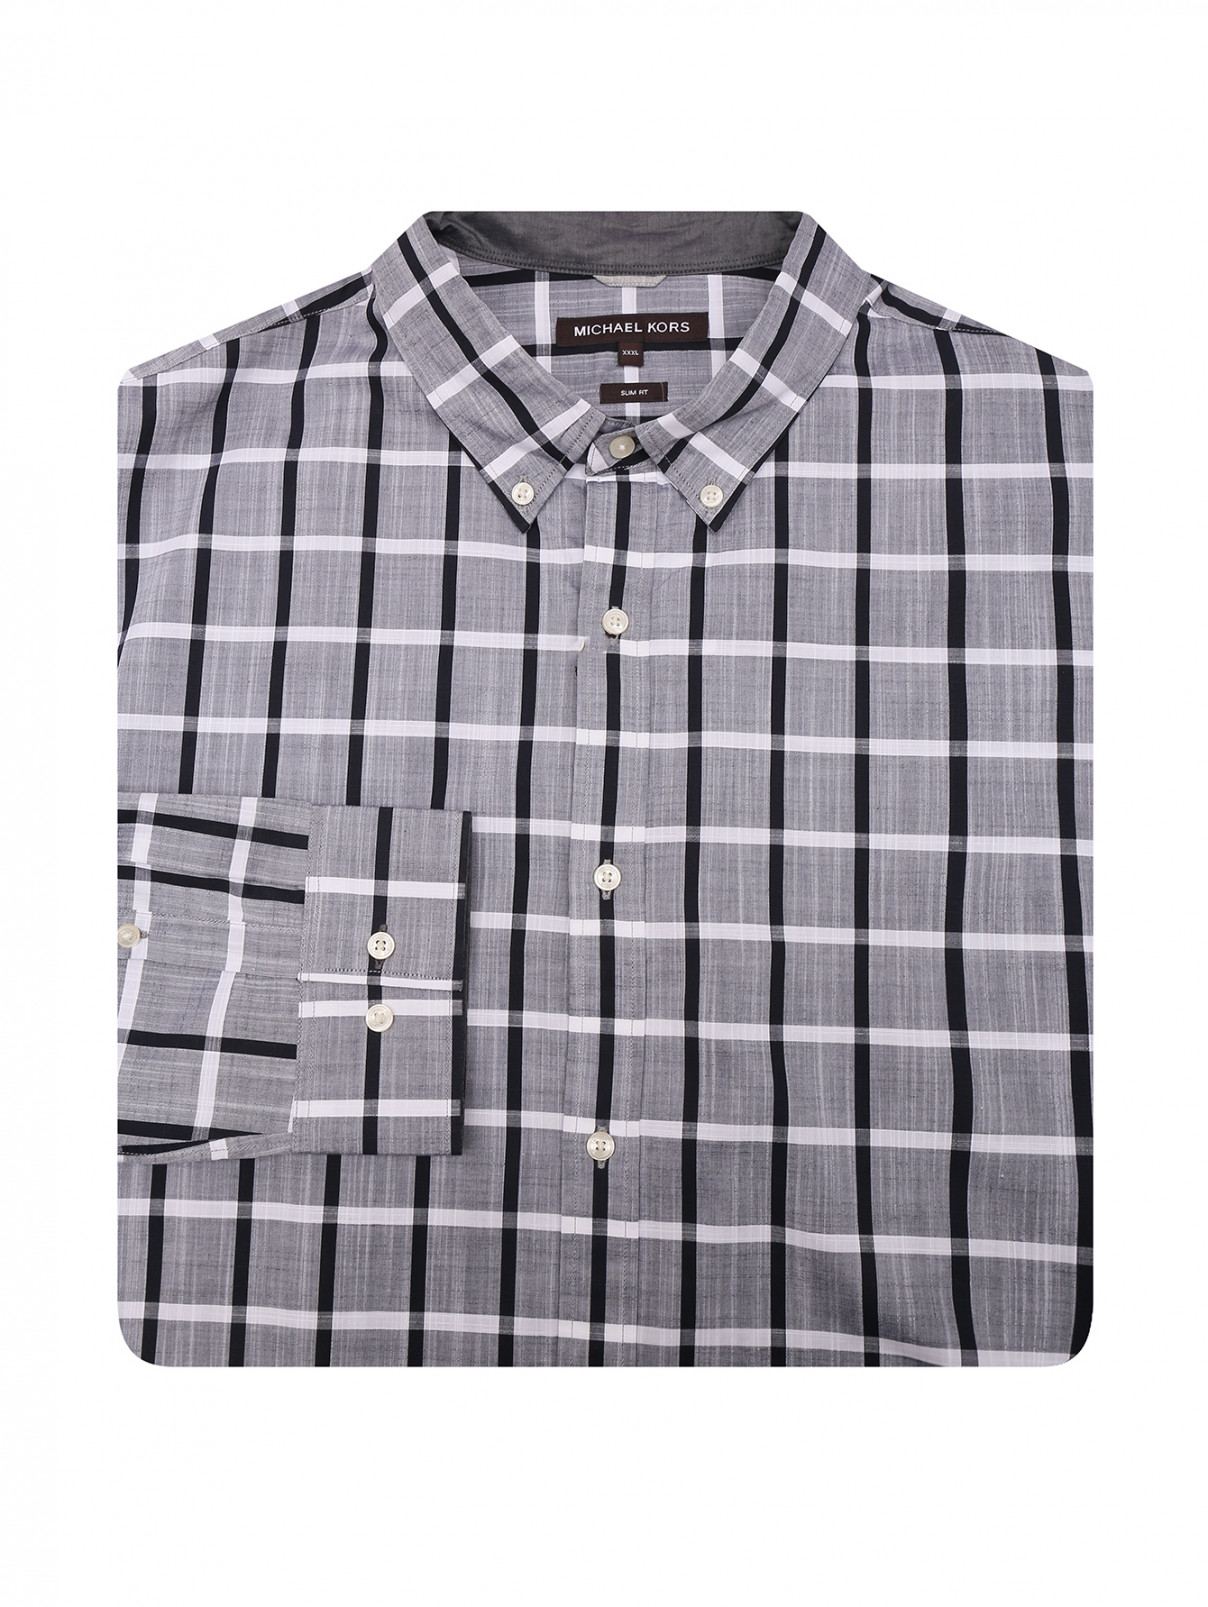 Рубашка из хлопка с узором клетка Michael by MK  –  Общий вид  – Цвет:  Серый